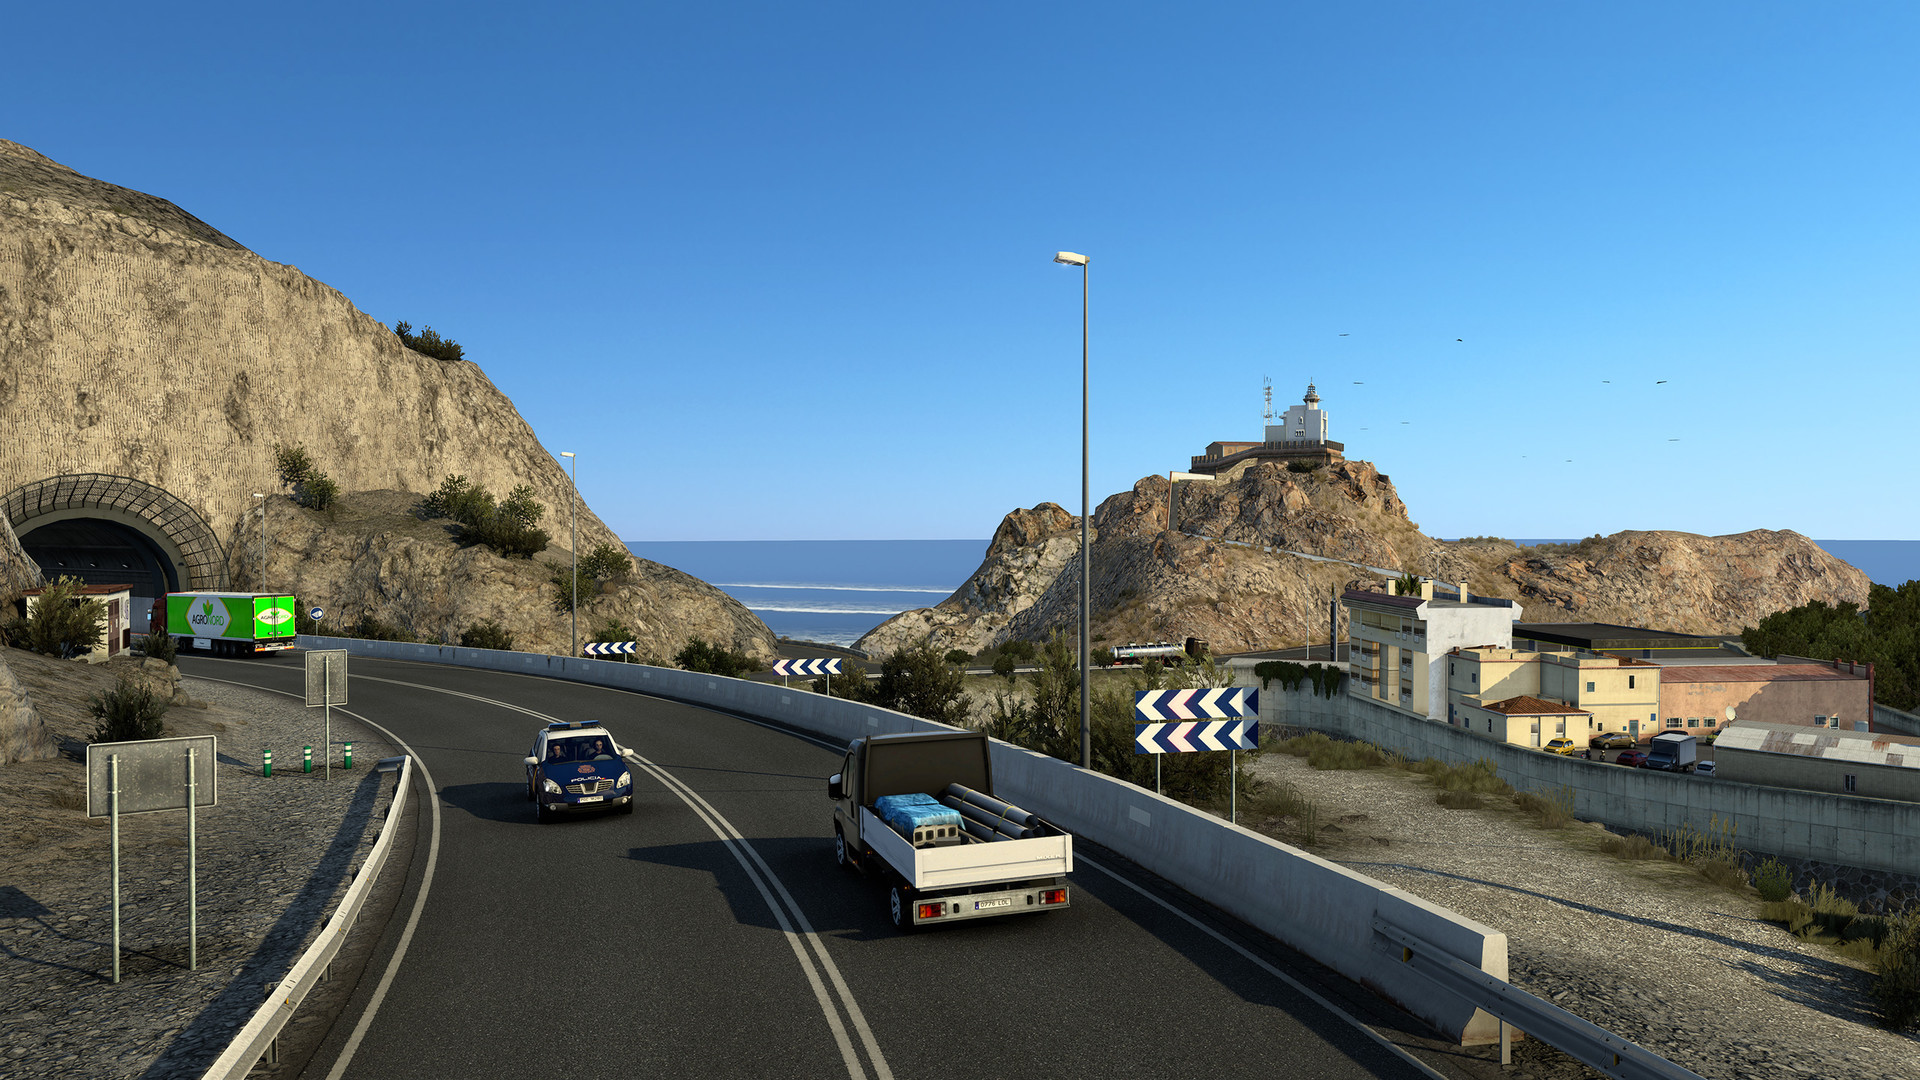 Euro Truck Simulator 2 - Iberia DLC, PC